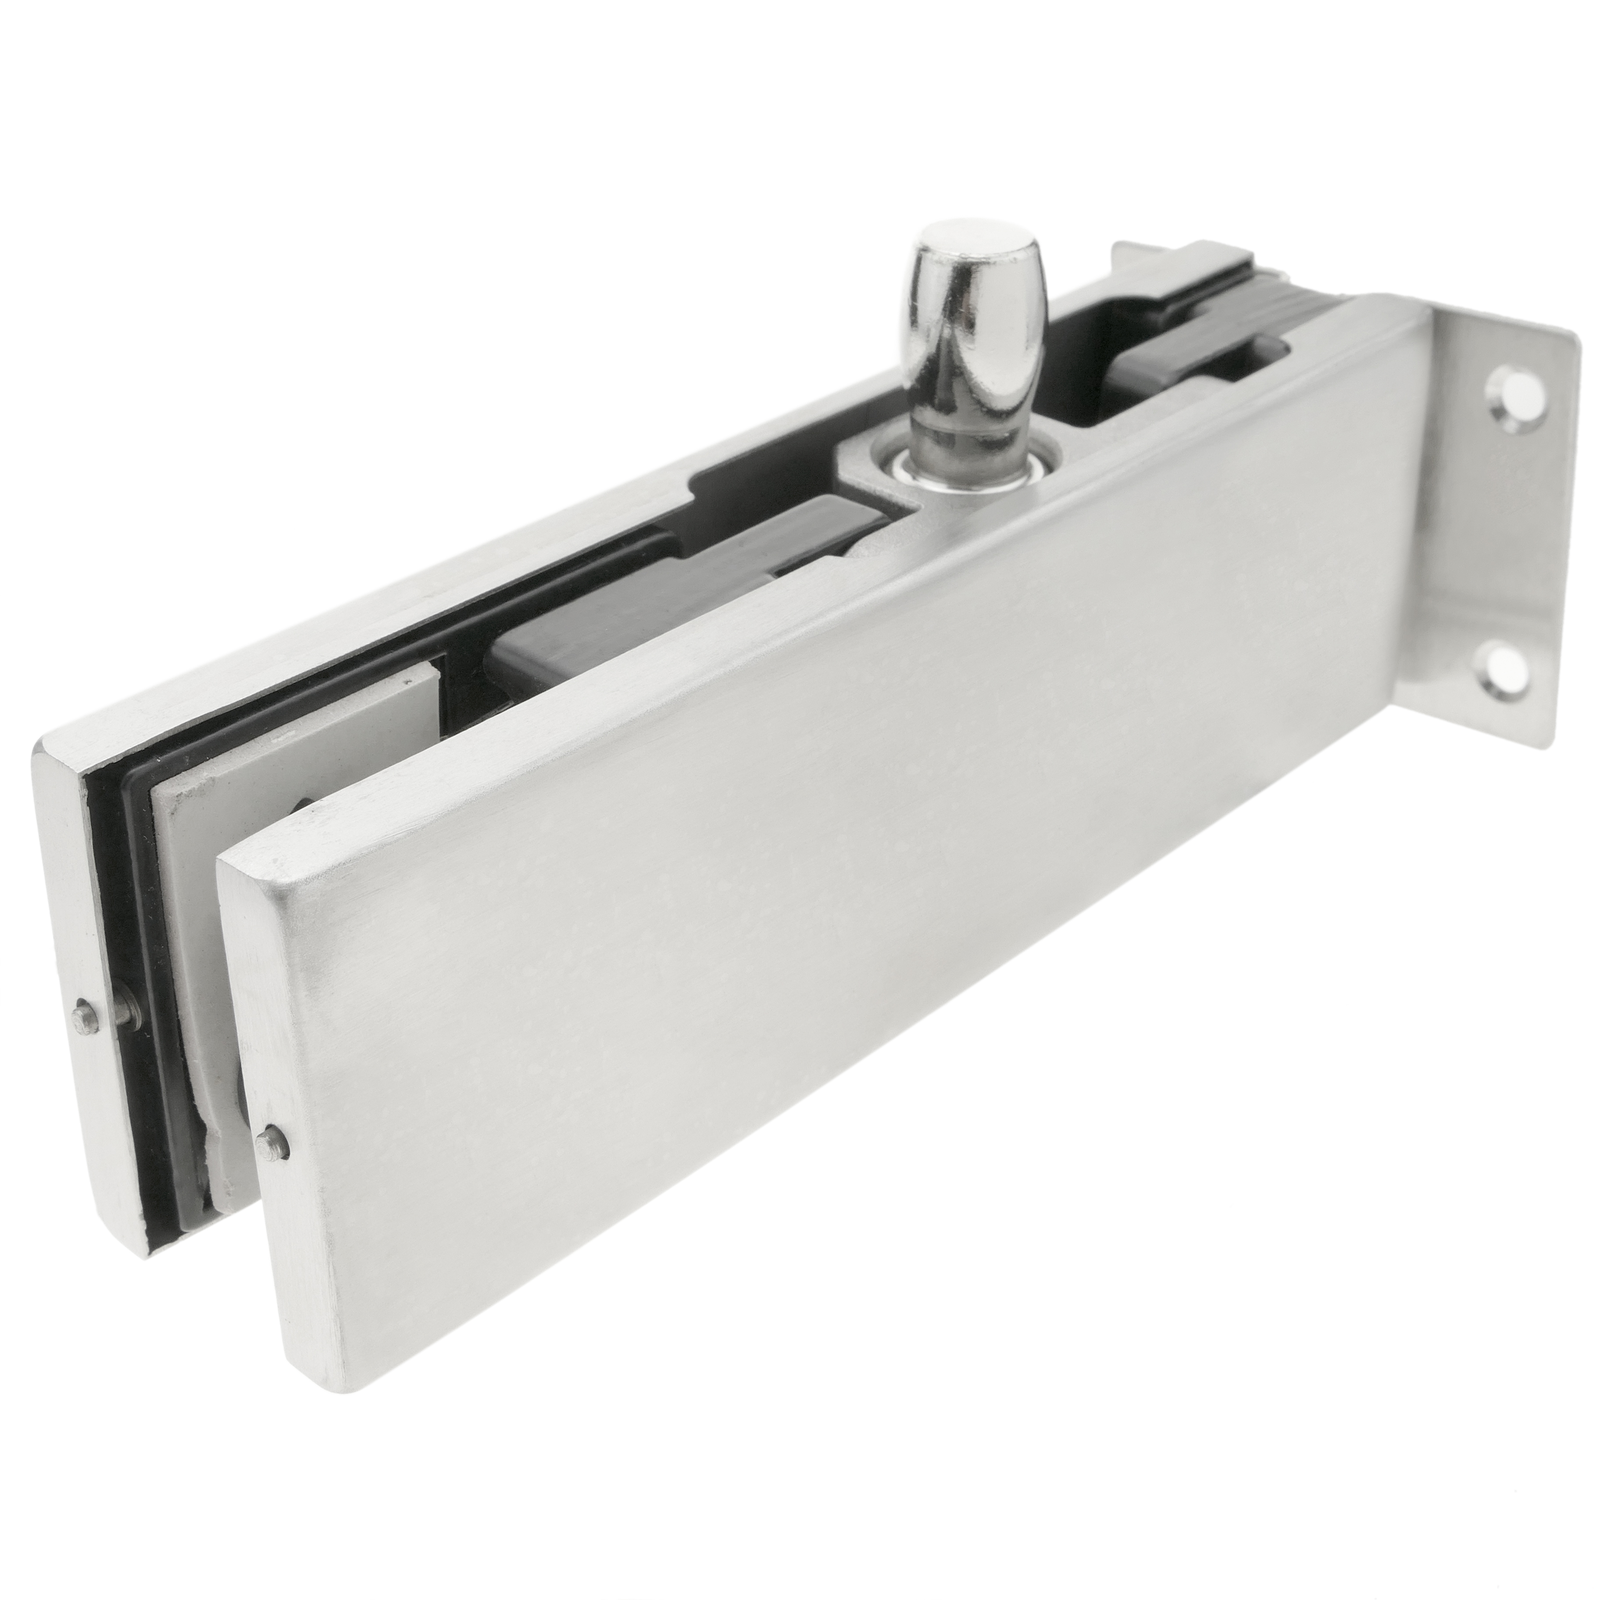 Pack Stainless Steel Door Hinges Heavy Duty Hinges Material Thickness 3.0mm  Stainless Steel Hinge Connector (silver)